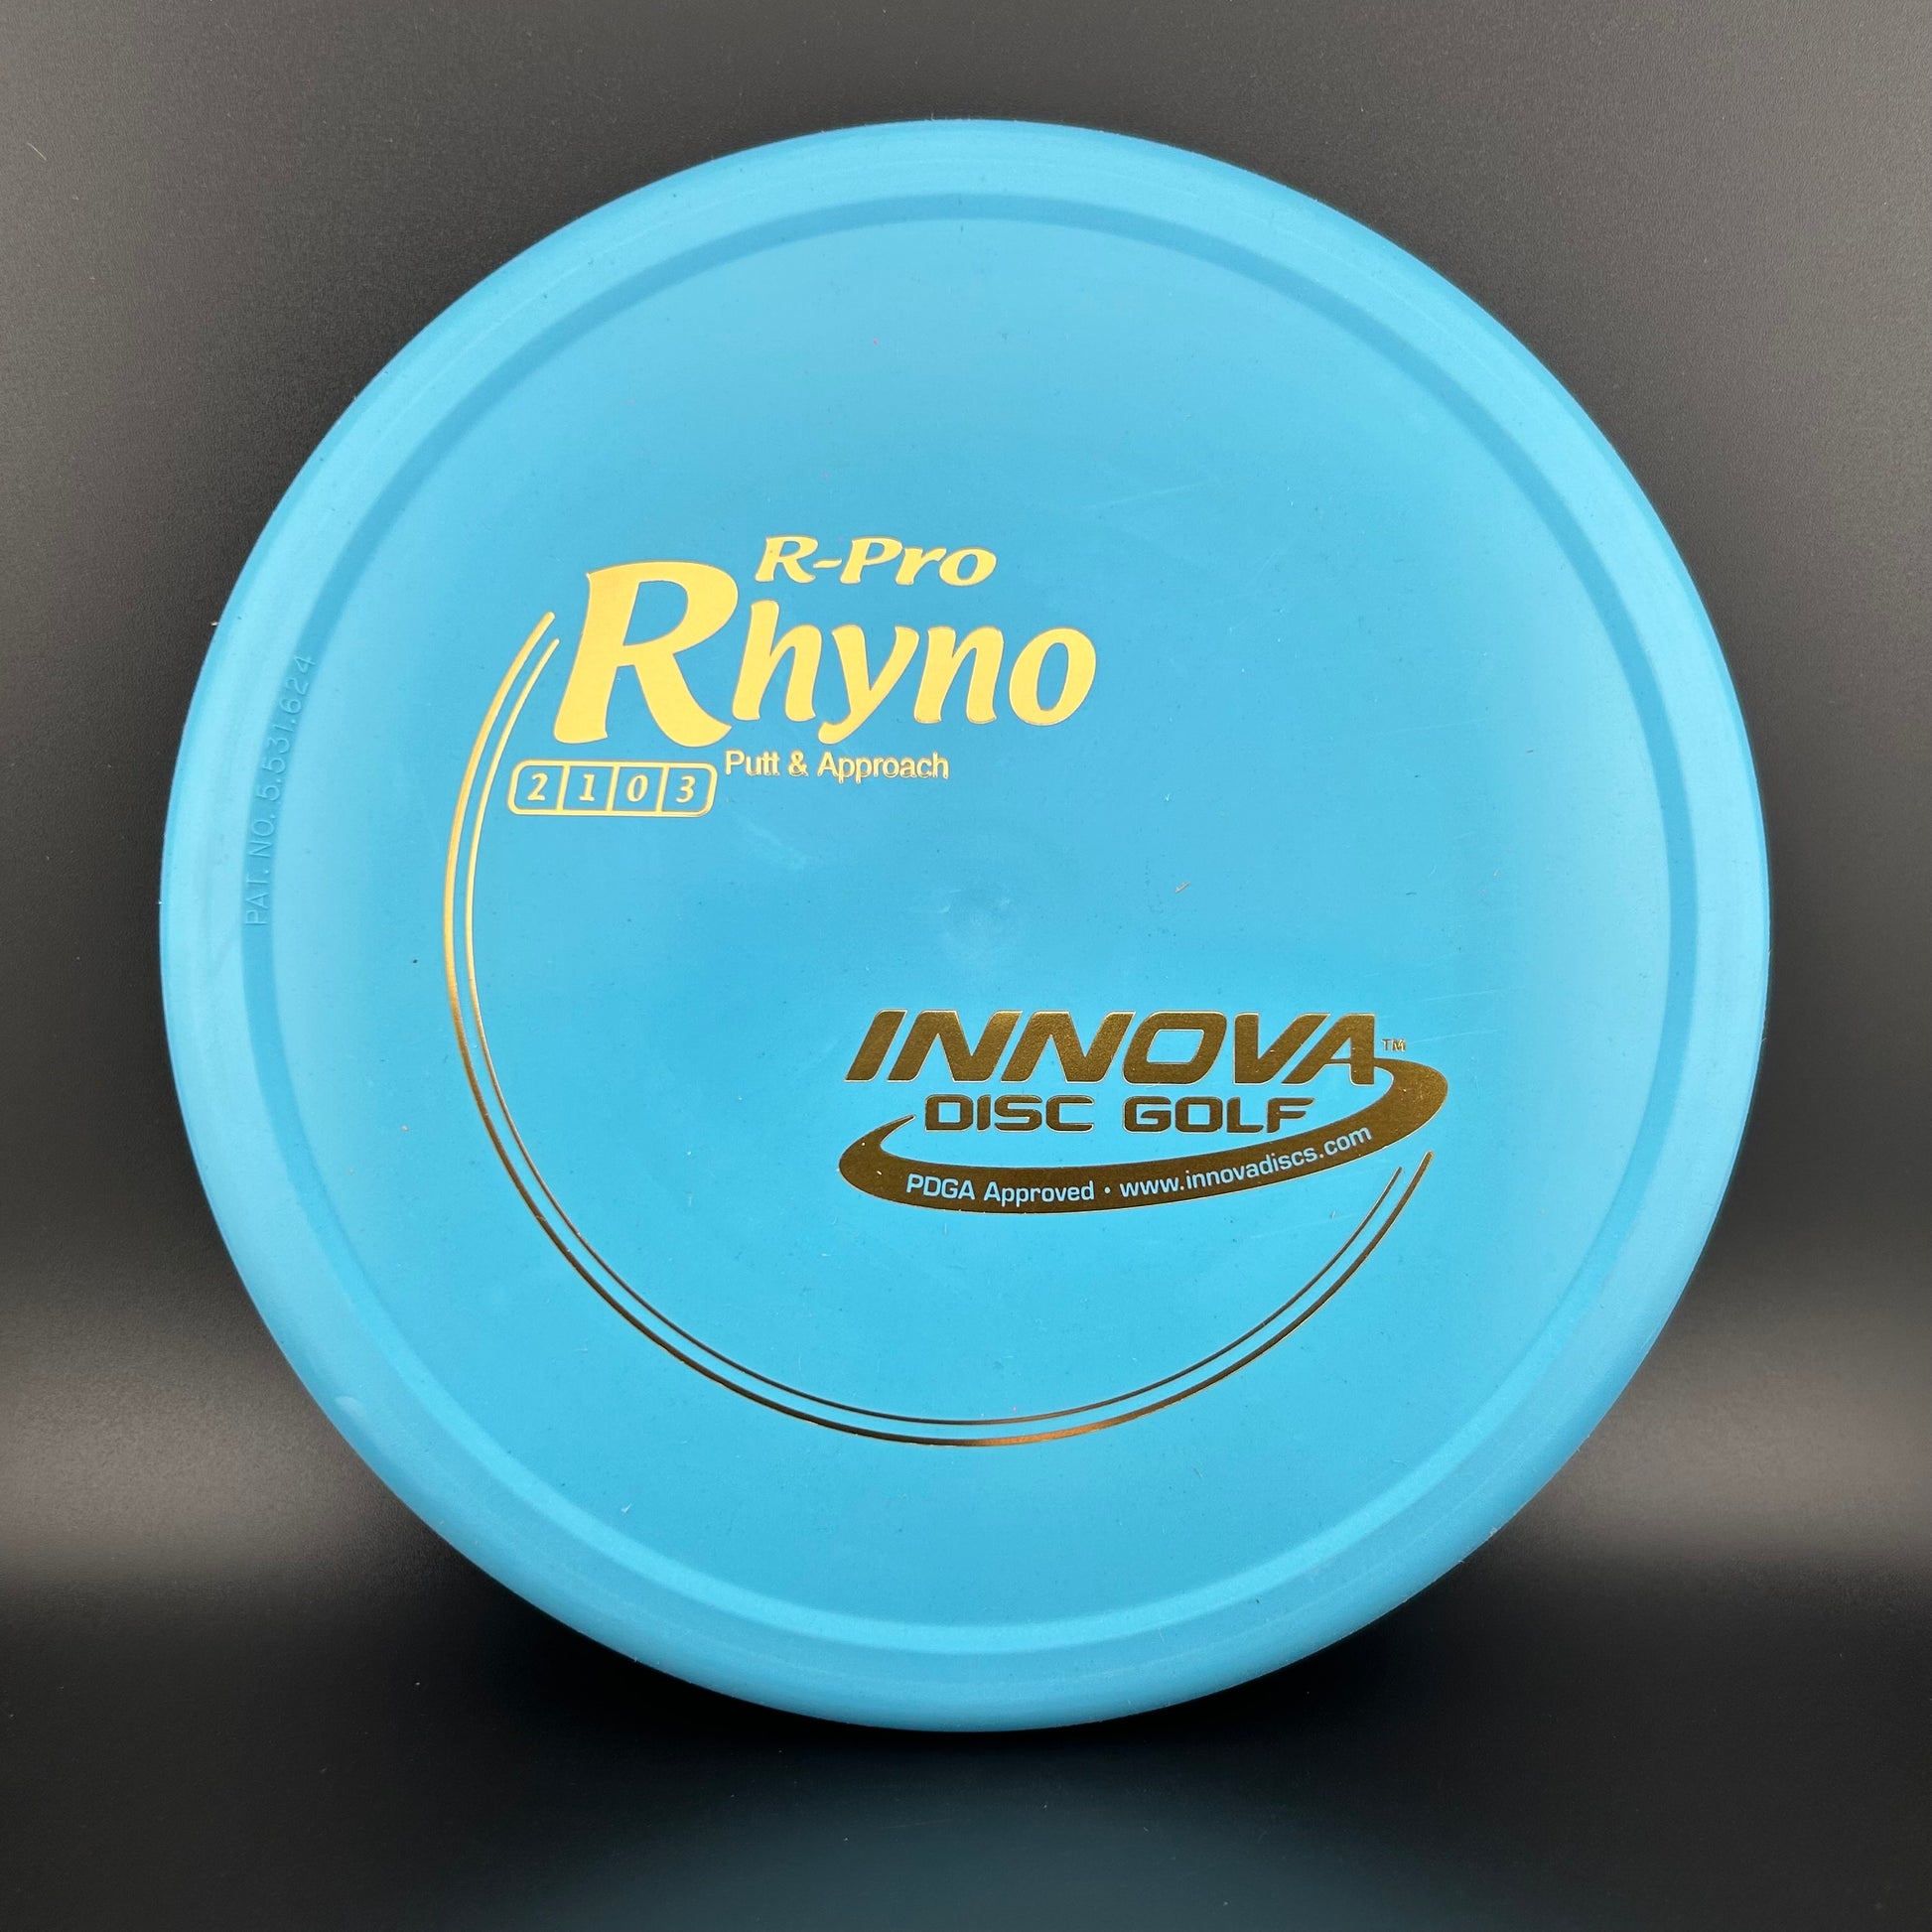 R-Pro Rhyno Innova